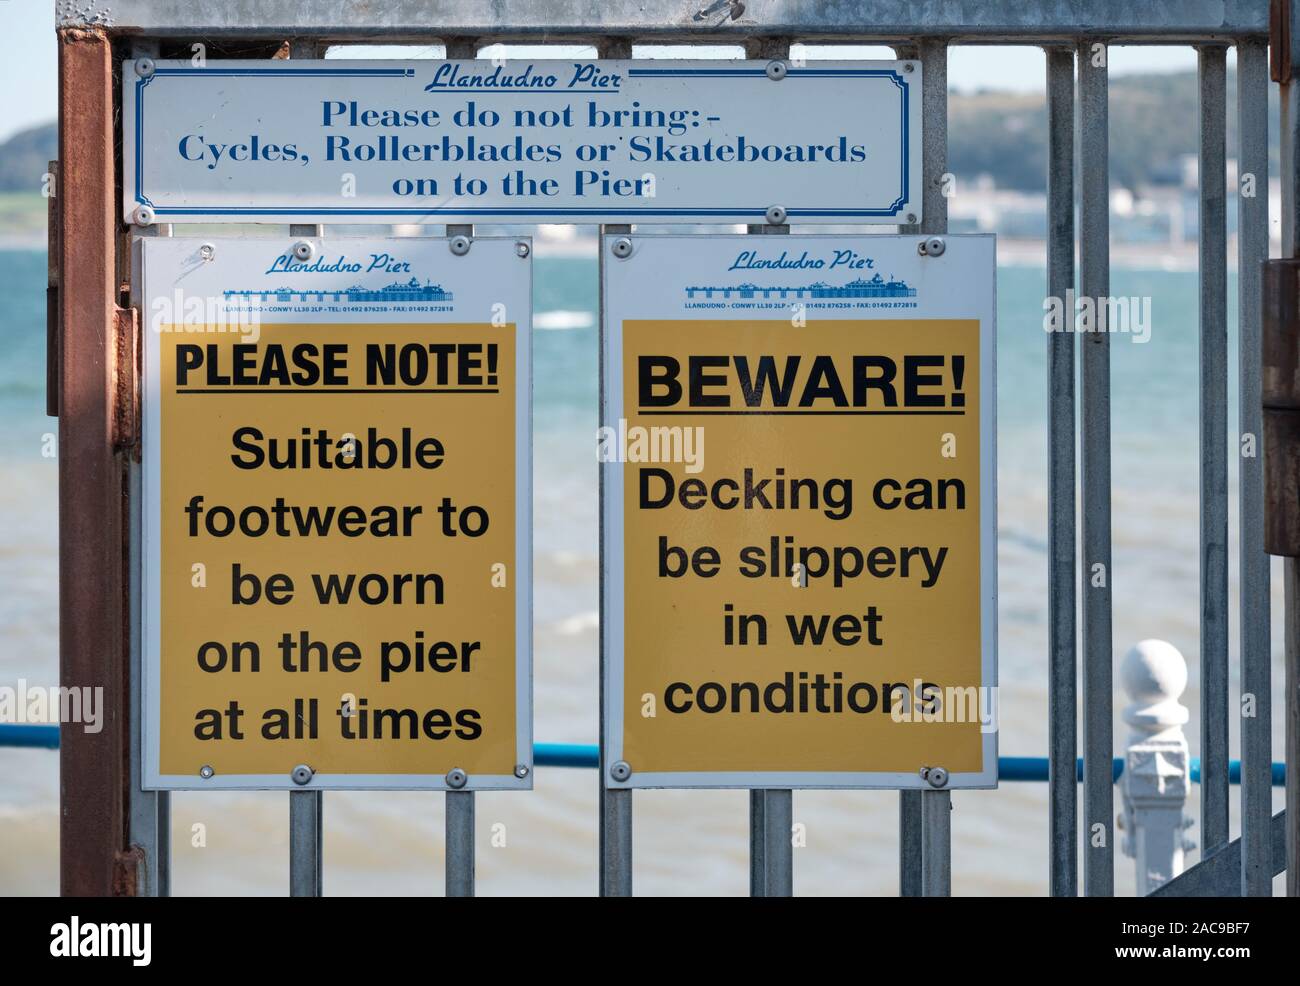 Señales de advertencia en Llandudno Pier: Ten cuidado resbaladiza, calzados usados, sin ciclos... Llandudno, Gales, Foto de stock